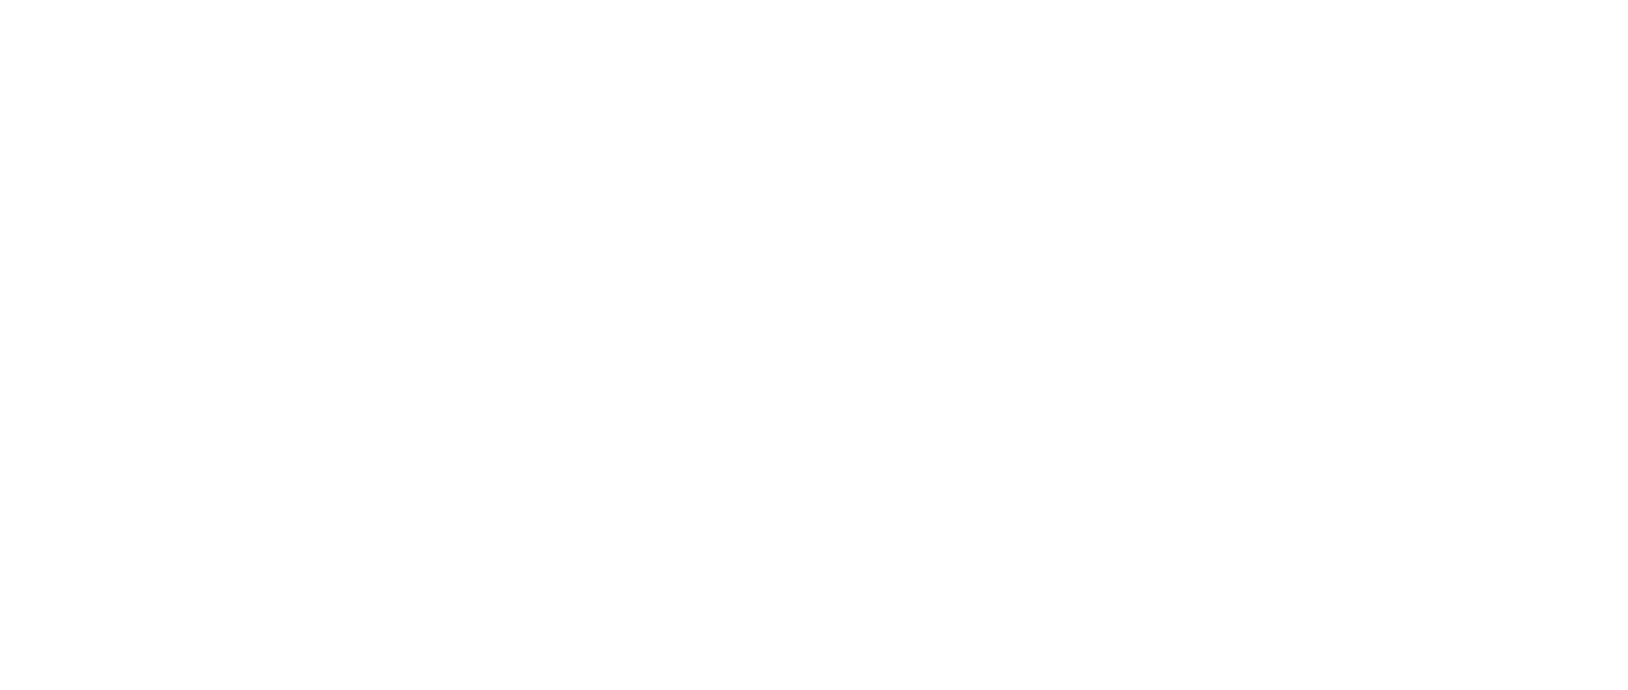 Royal CrossFit